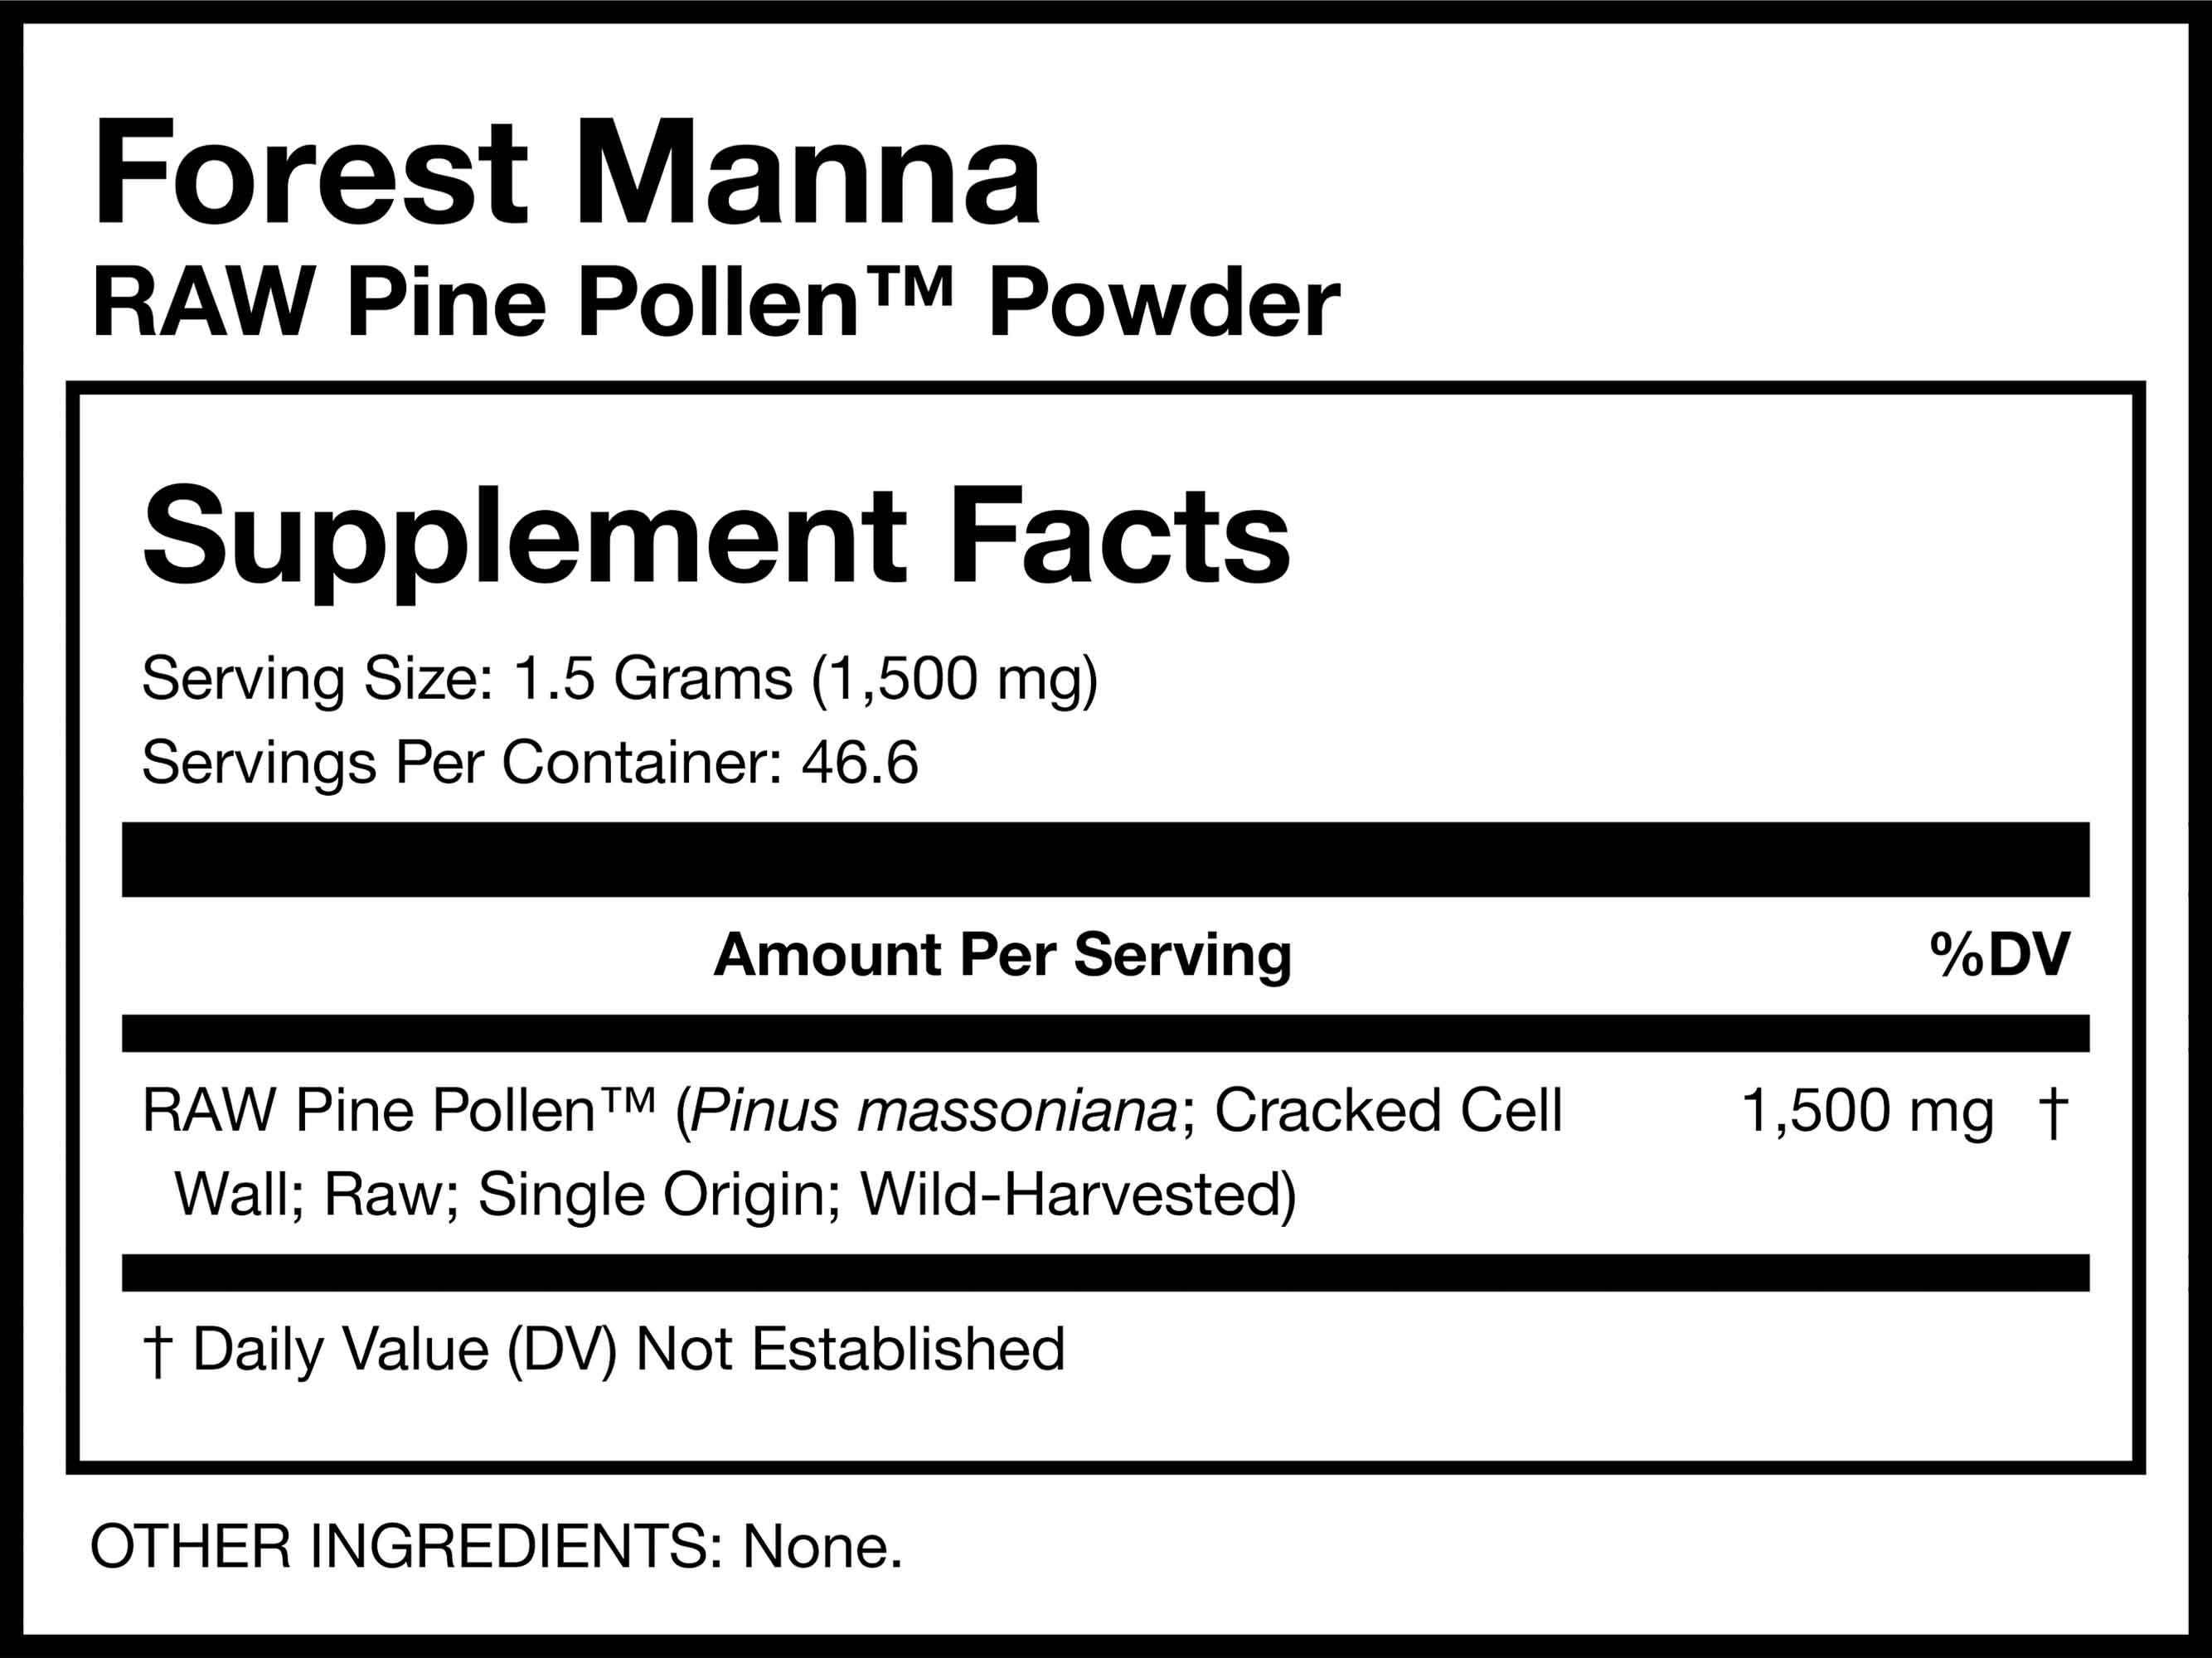 Forest Manna RAW Pine Pollen™ Powder